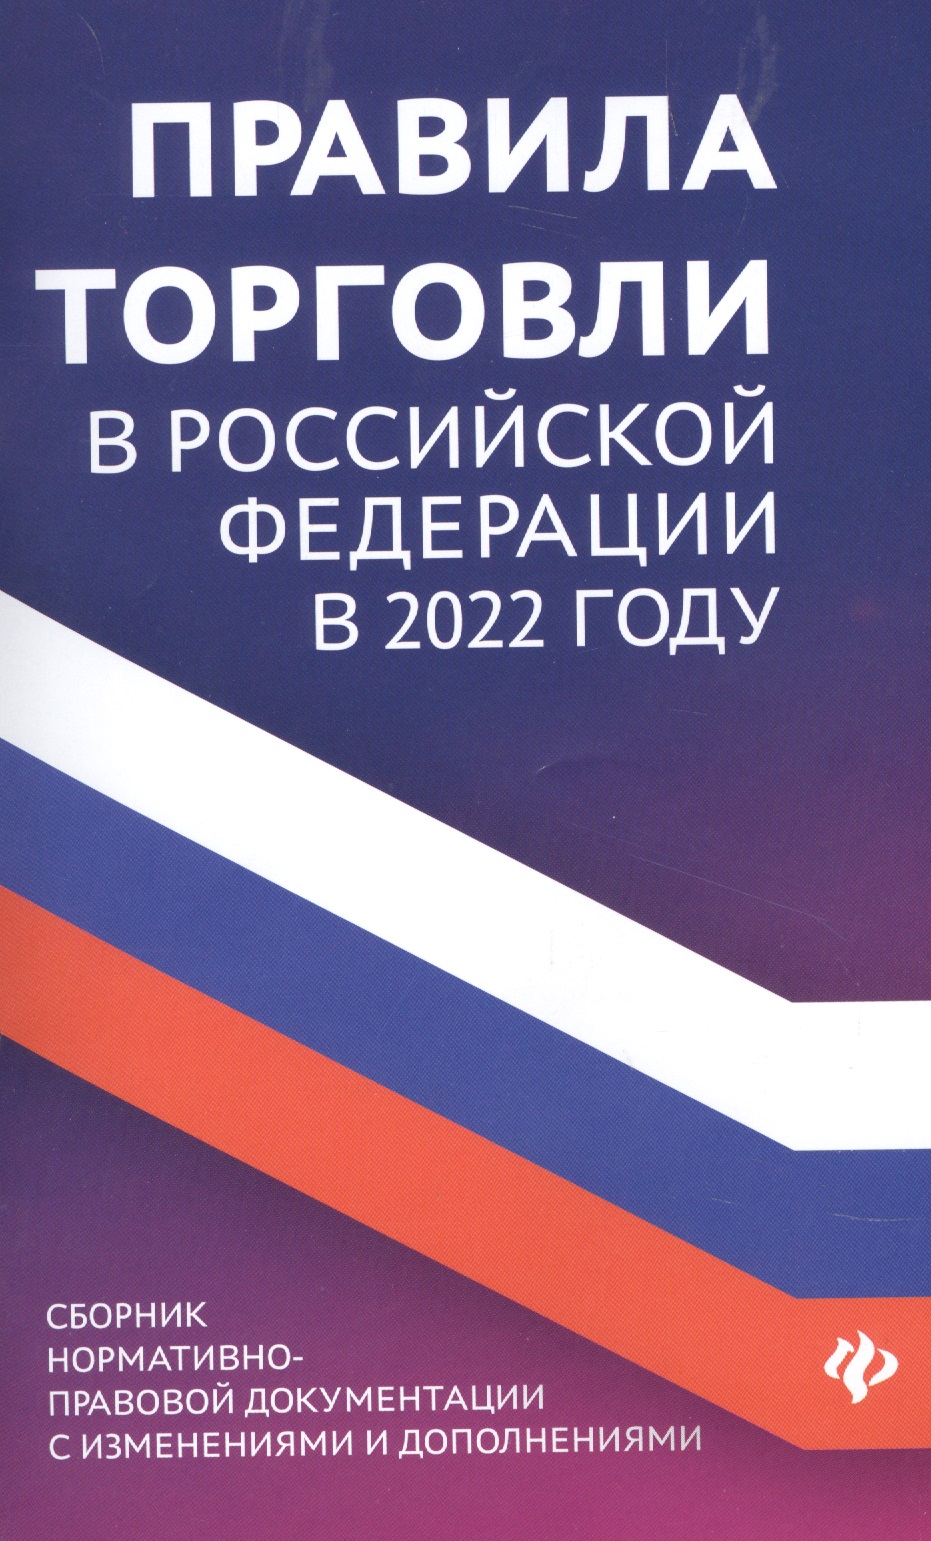 Правила торговли в РФ в 2022 г.:сборник норматив.-прав.док. правила торговли в рф в 2022 году сборник нормативно правовой документации